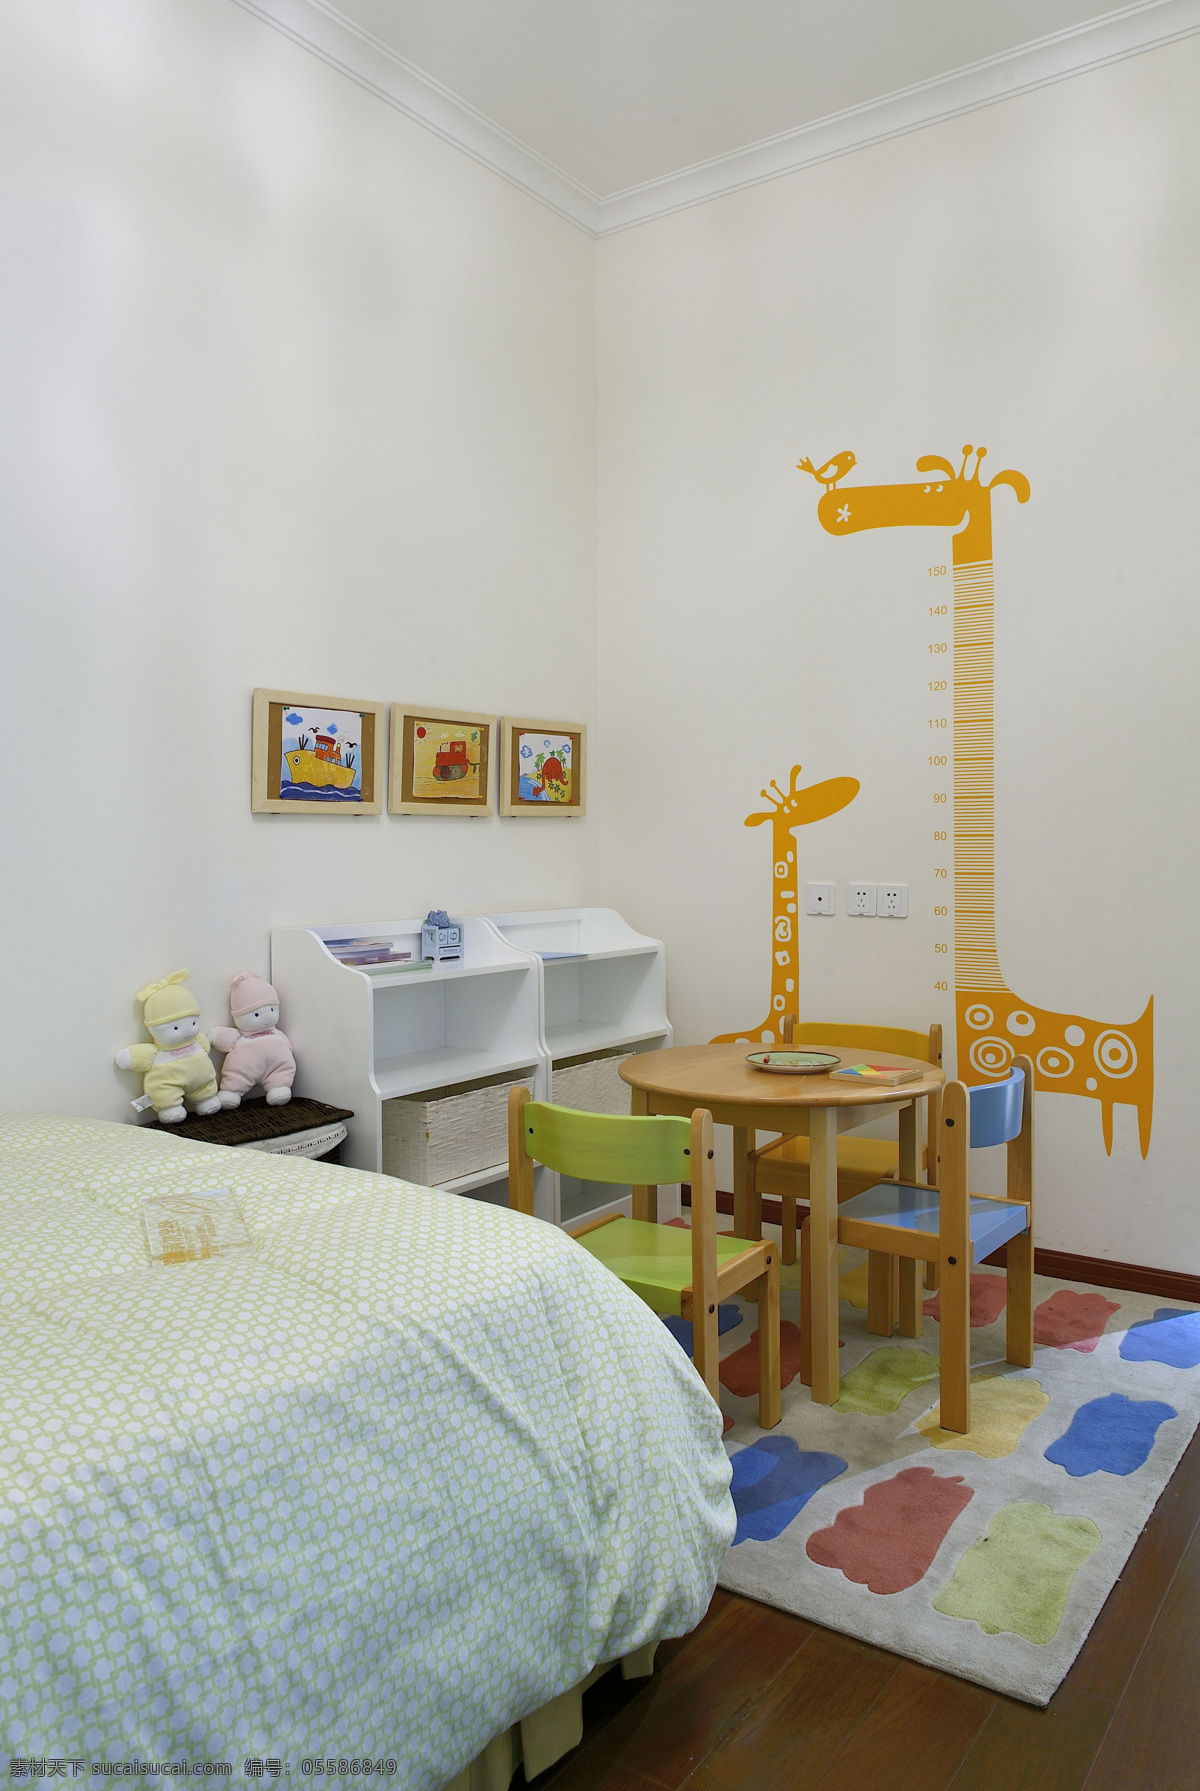 现代 简约 可爱 风格 儿童 房 装修 效果图 可爱风格 卧室装修 高清大图 室内设计